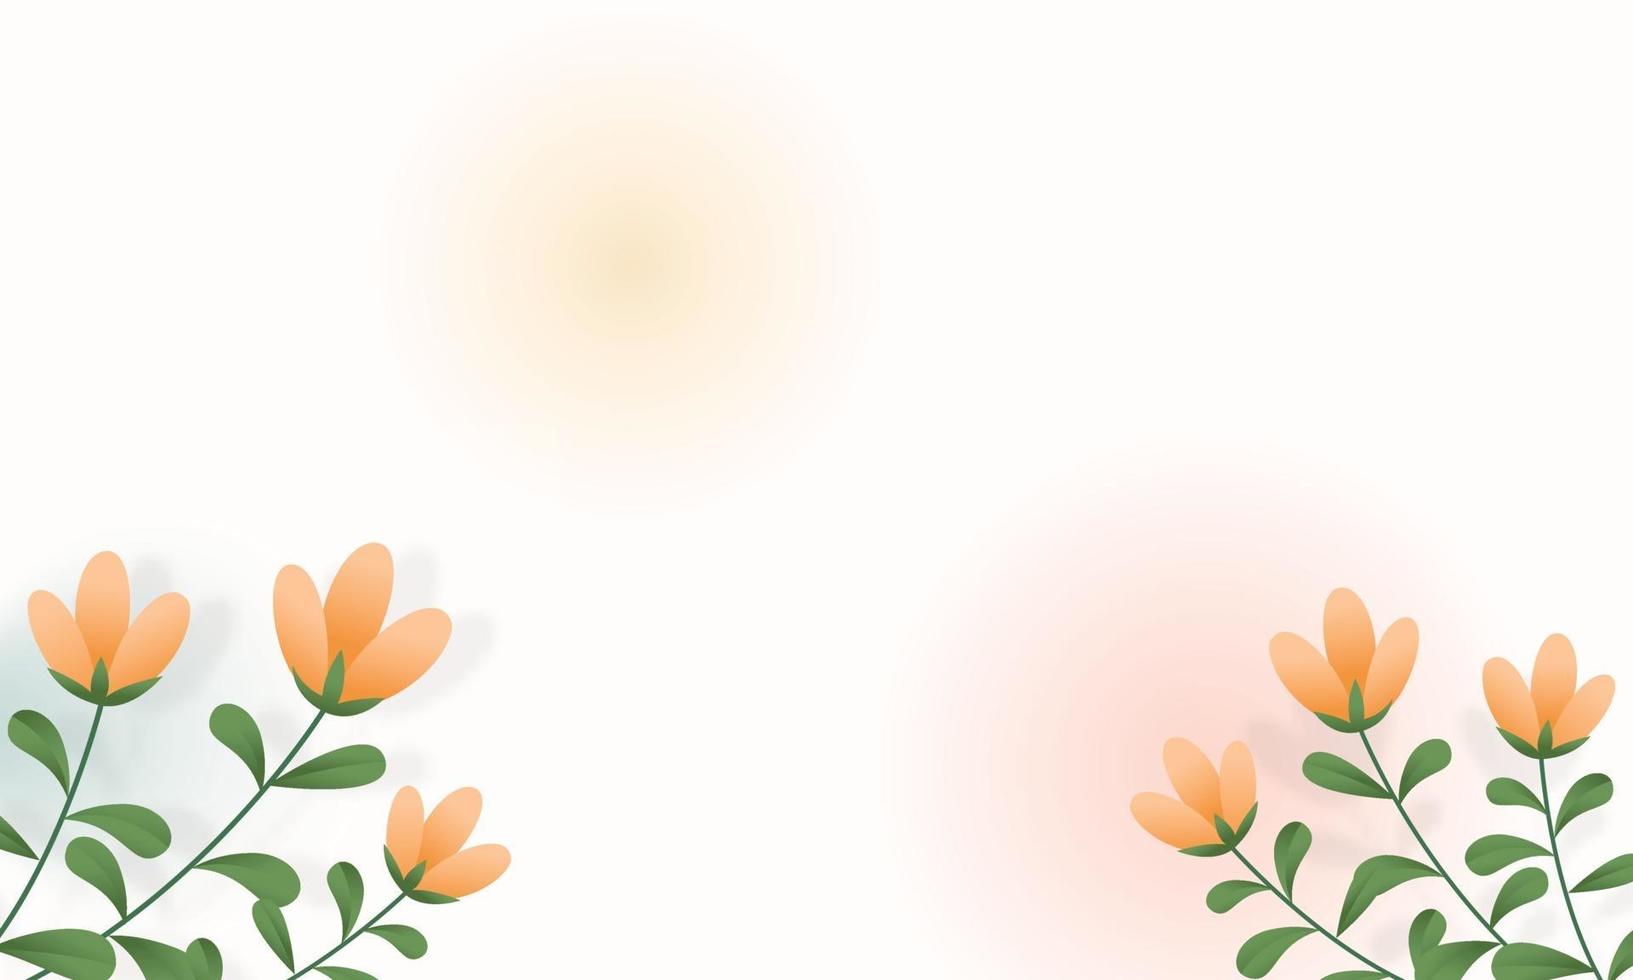 banner sfondo bianco con fiori vettore